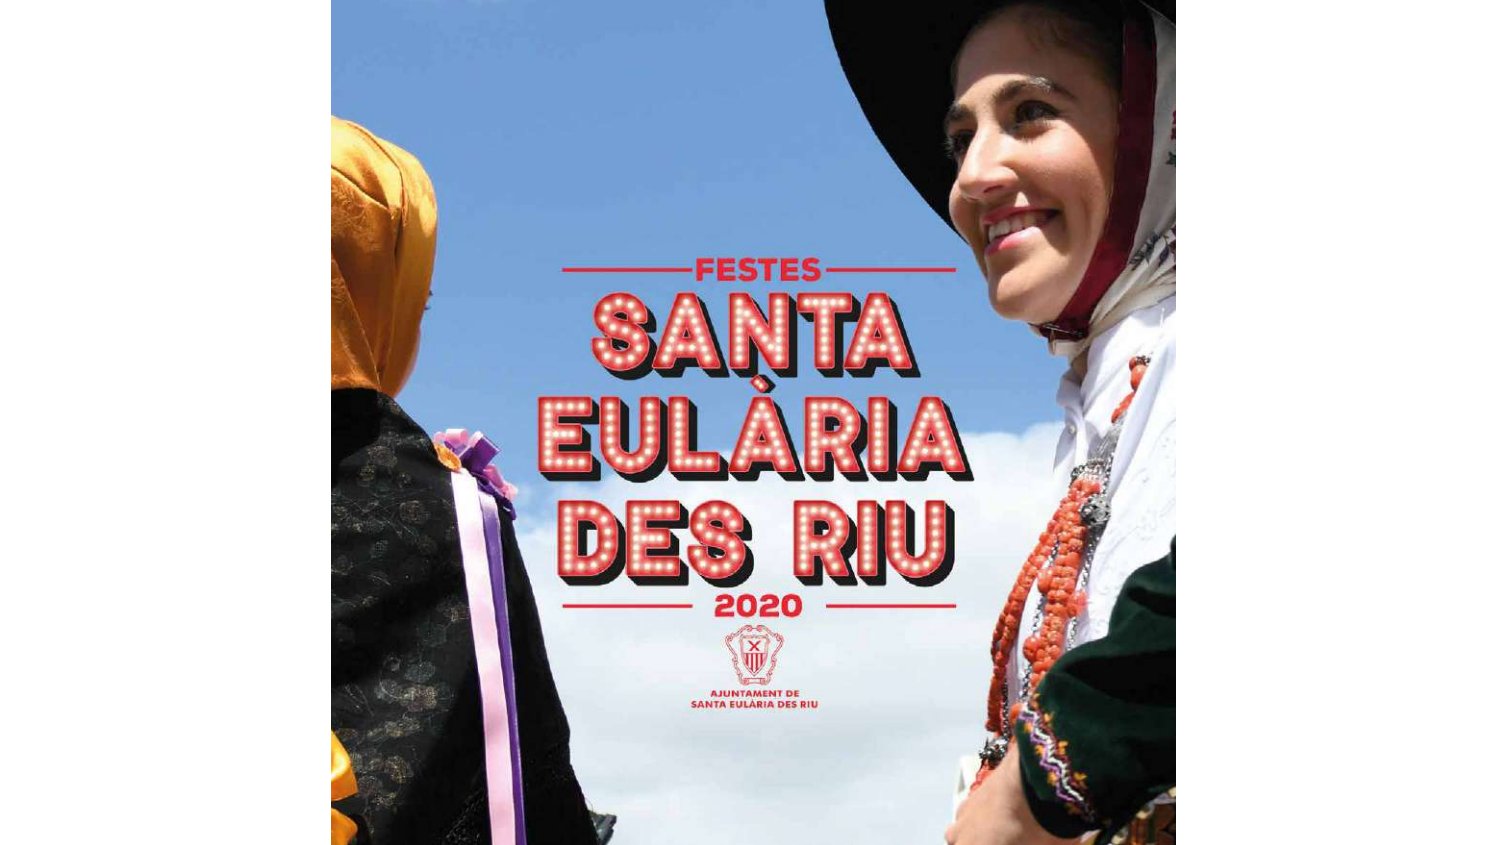 Festes de Santa Eularia des Riu Festival, Santa Eulalia 